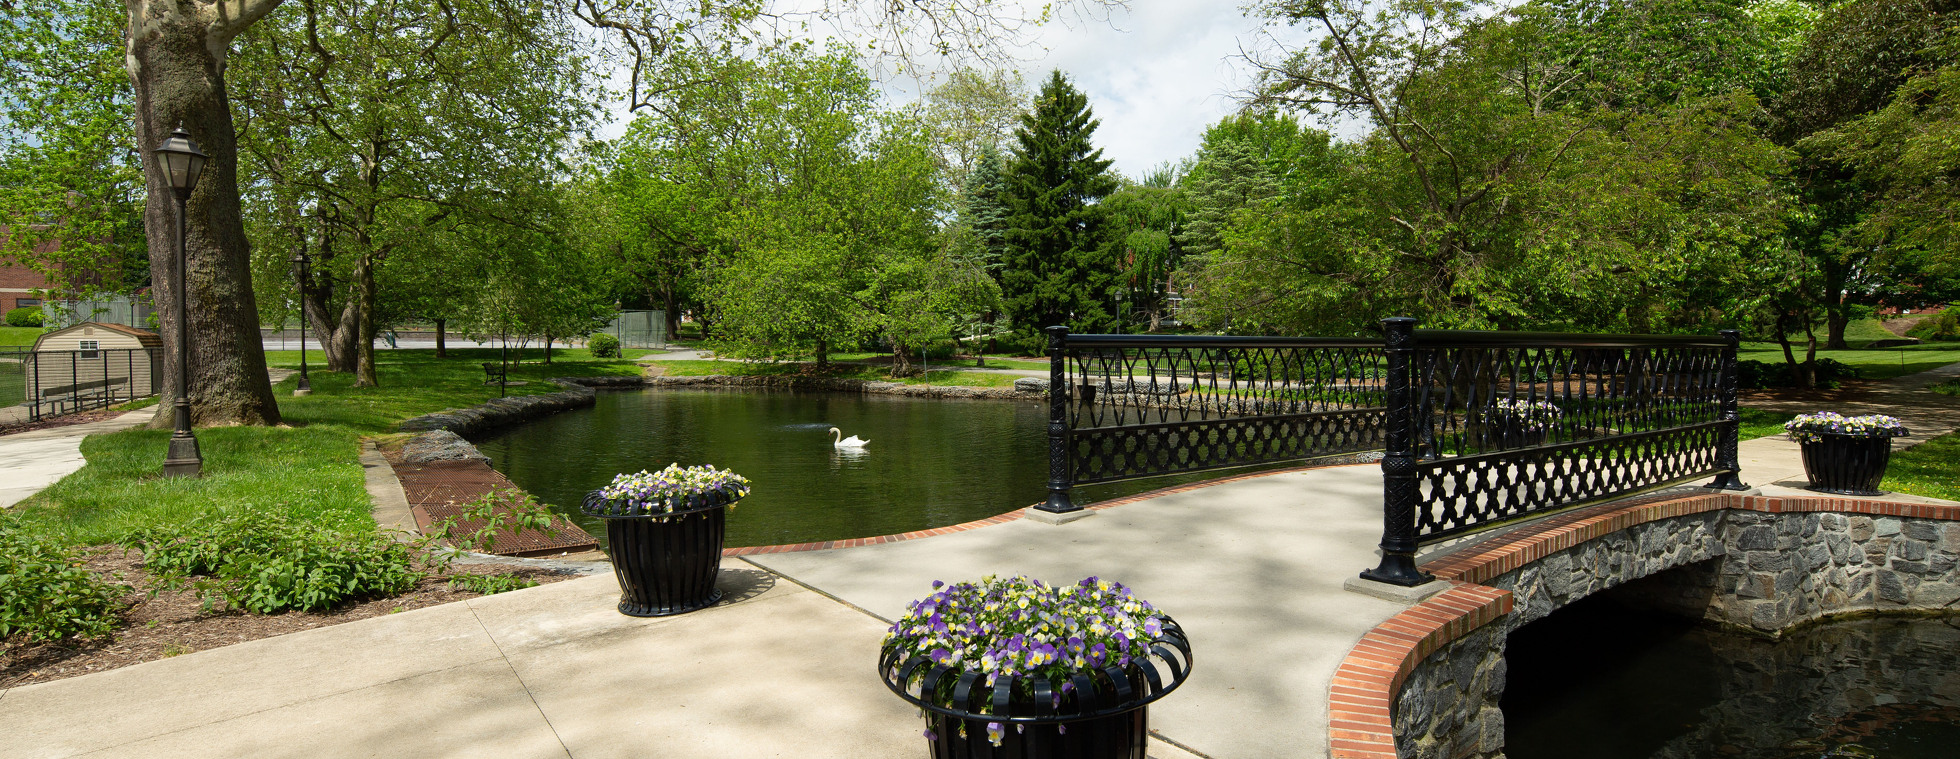 Campus pond